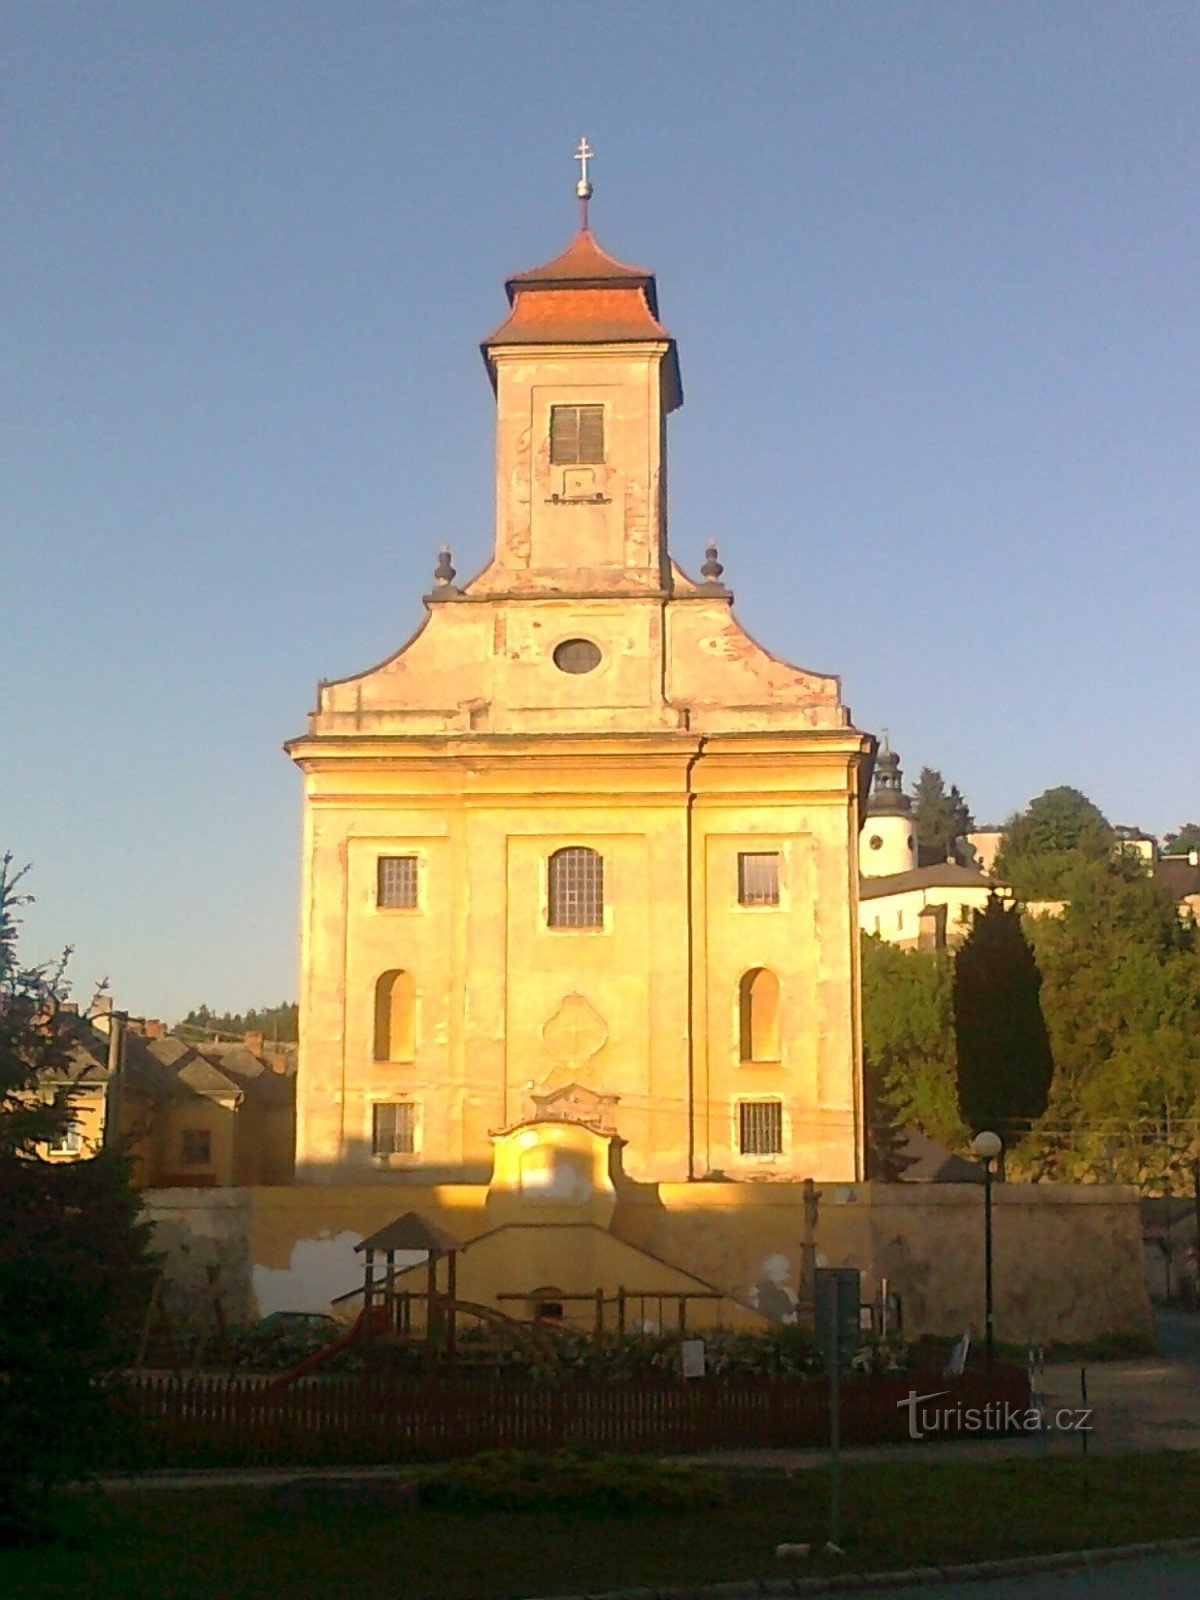 лицевая сторона церкви св. Джильи со стороны площади Миру